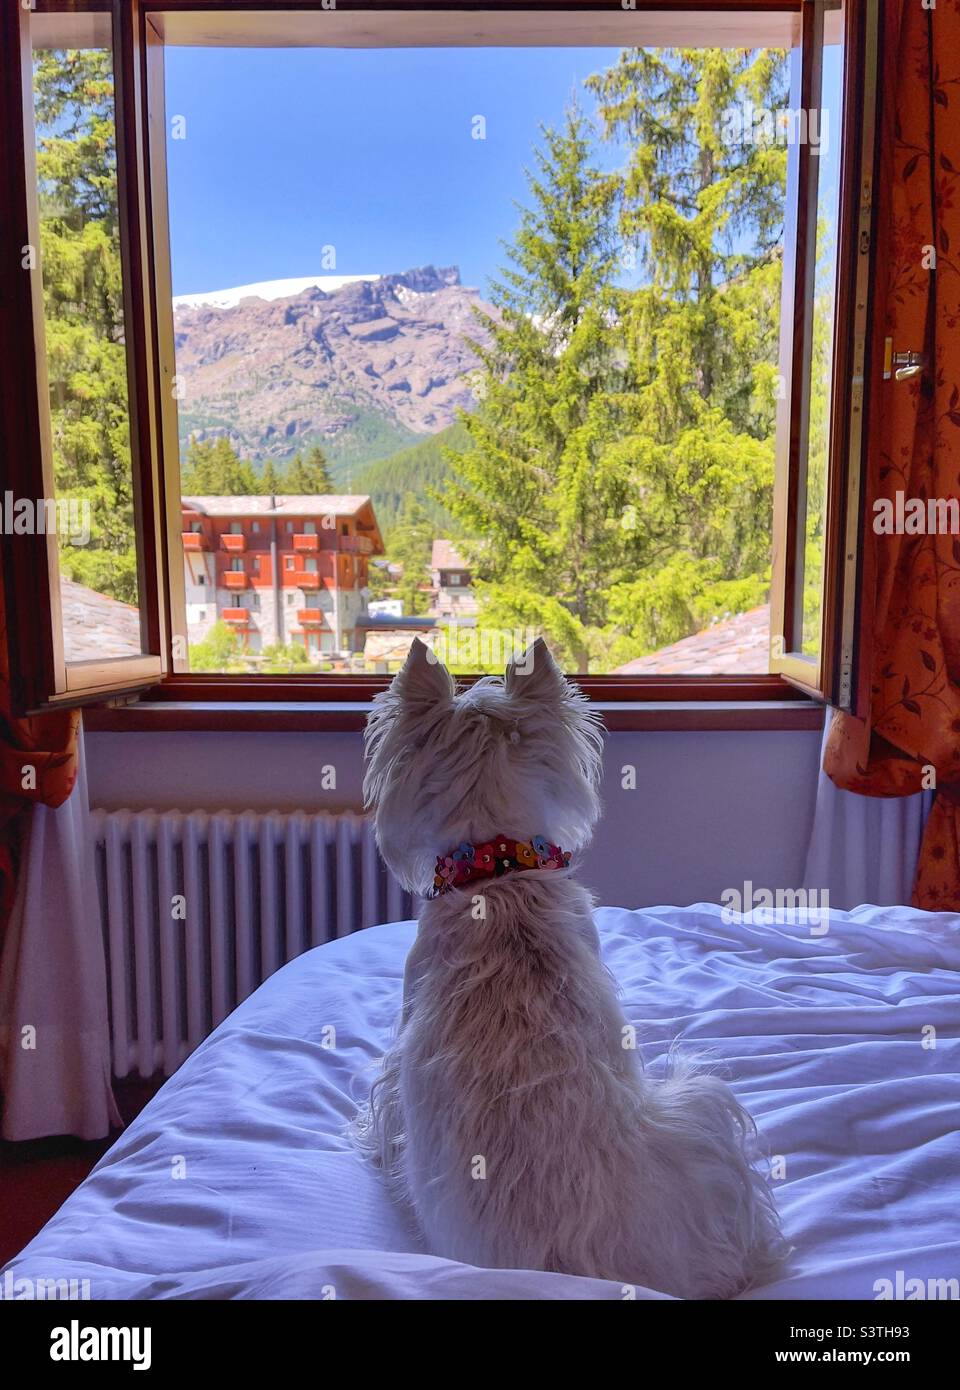 Un chien terrier blanc des montagnes de l'ouest regarde par une fenêtre dans un hôtel de montagne. Vallée de Champoluc Aoste Italie Alpes Banque D'Images